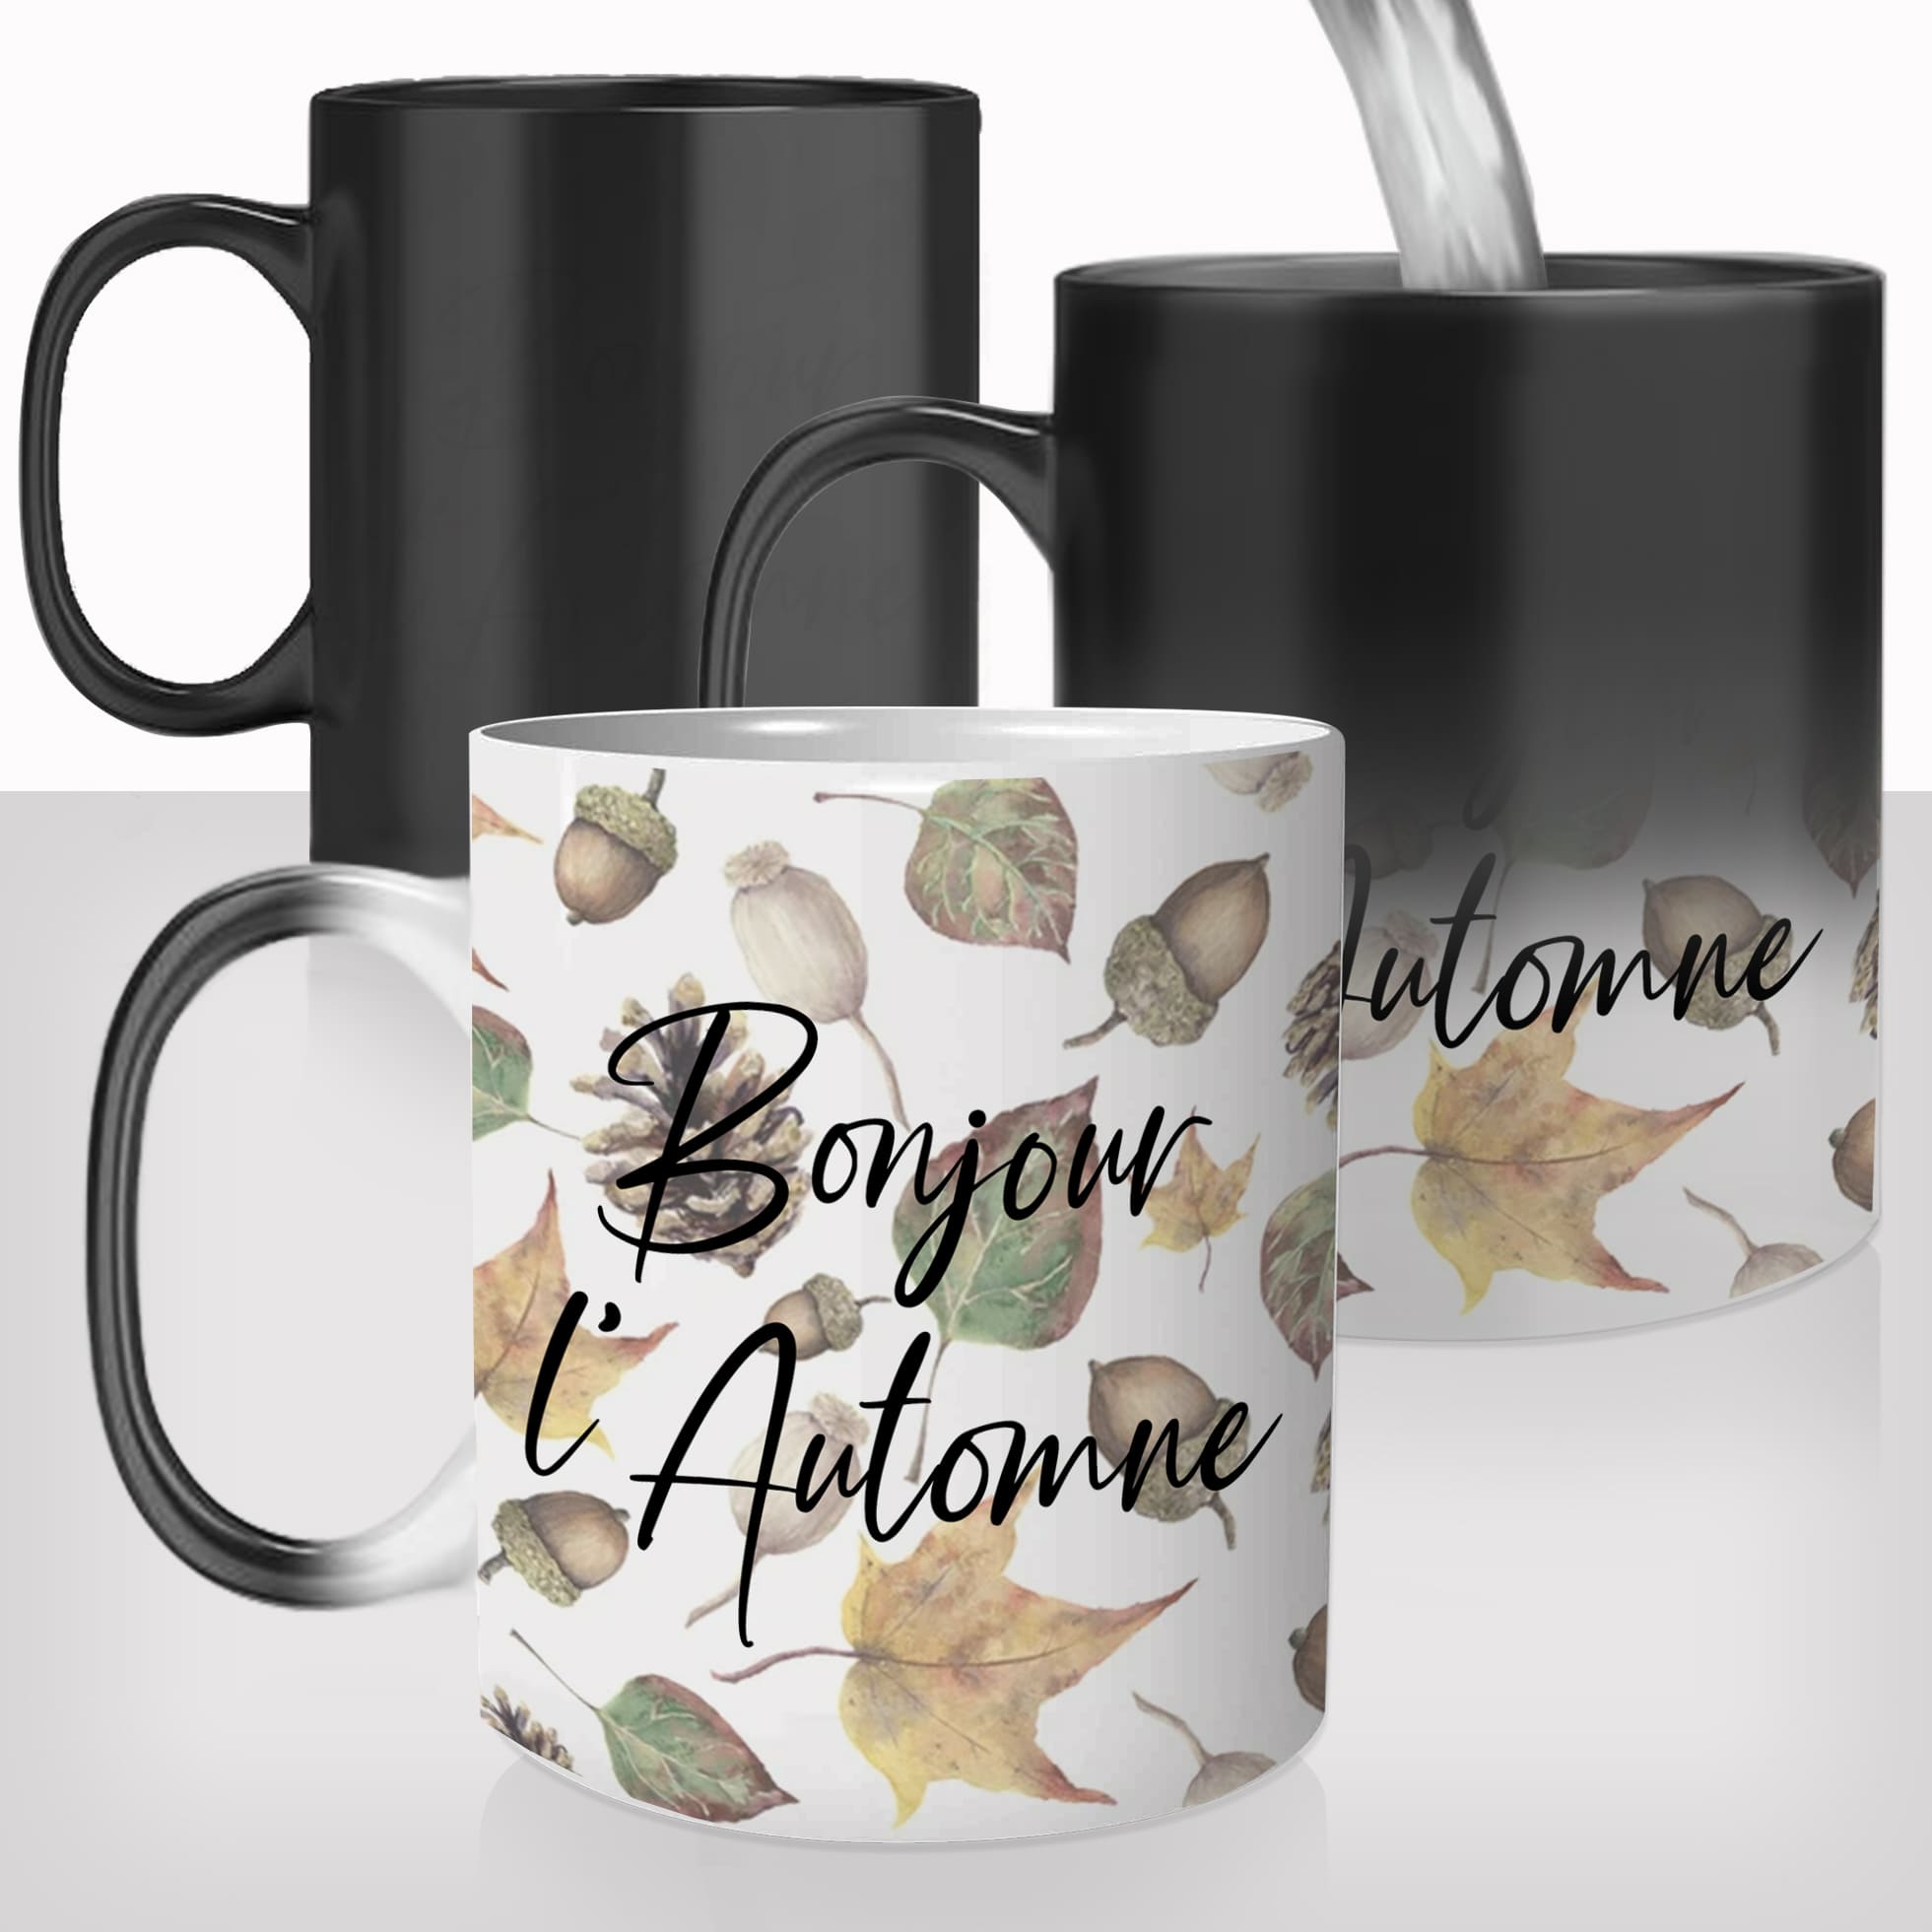 mug-magique-personnalisable-thermoreactif-tasse-thermique-saison-automne-feuilles-gland-forets-bonjour-personnalisé-fun-idée-cadeau-original